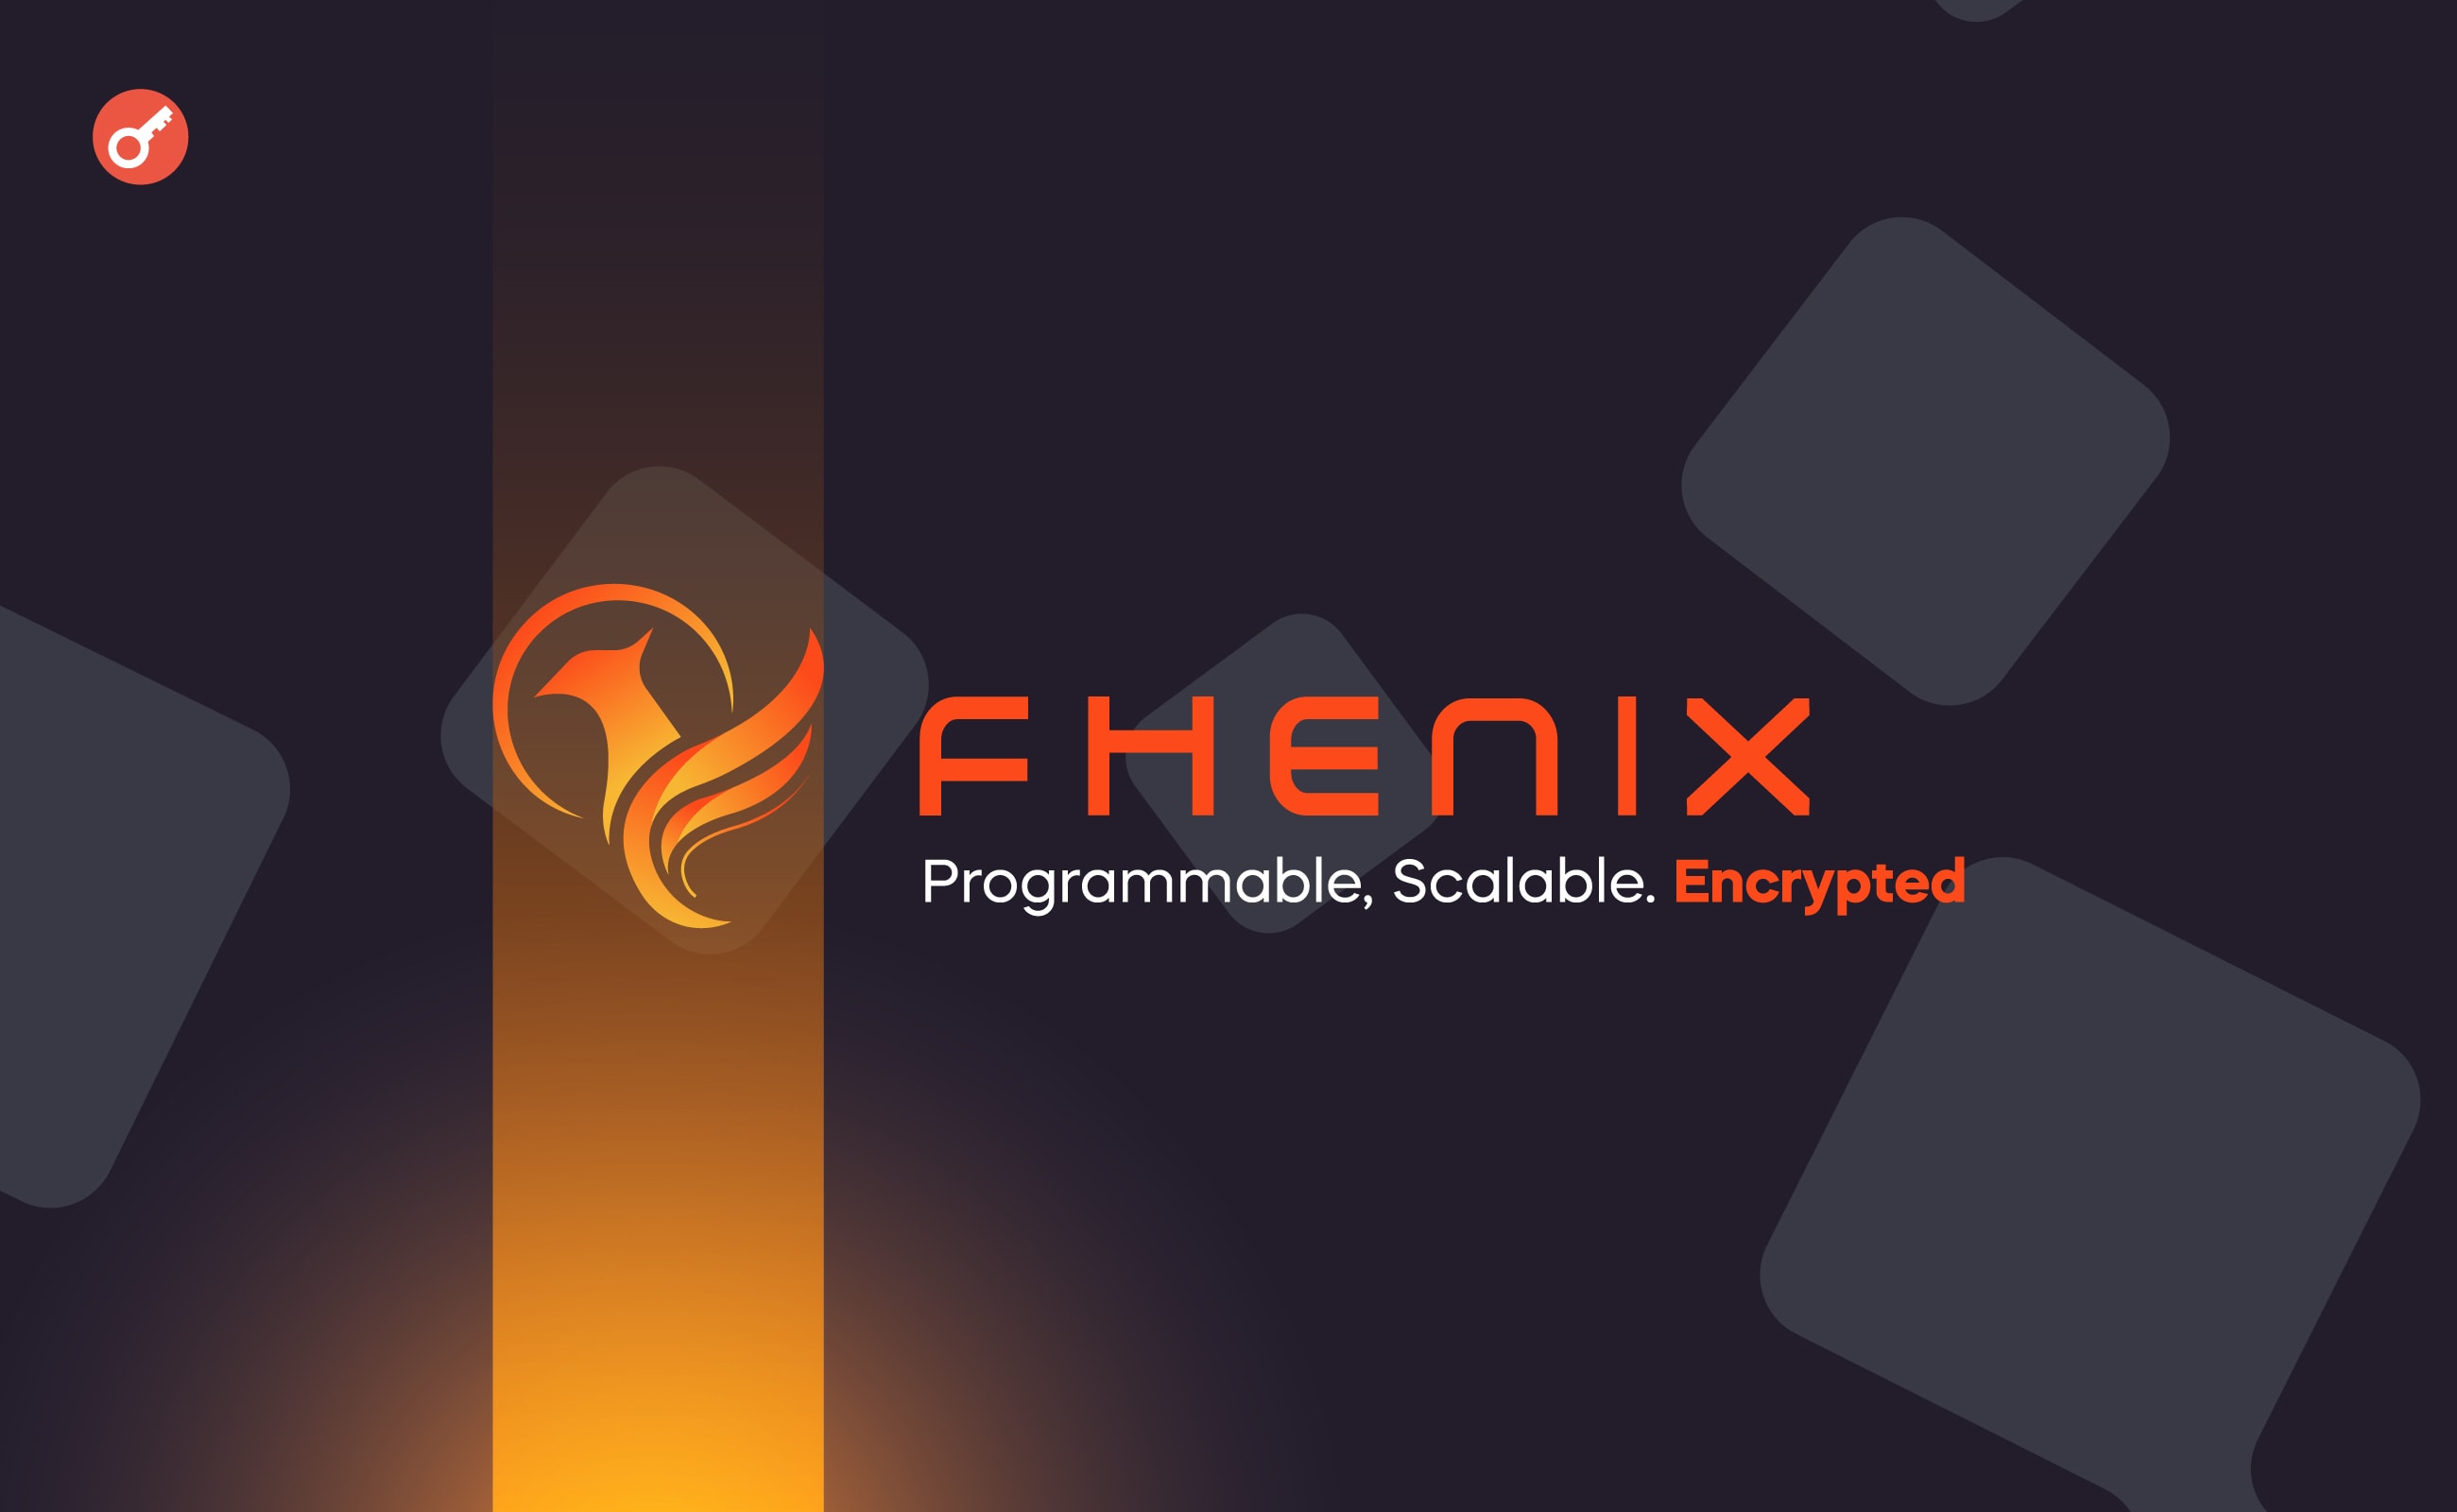 Fhenix привлекла $7 млн инвестиций. Заглавный коллаж новости.